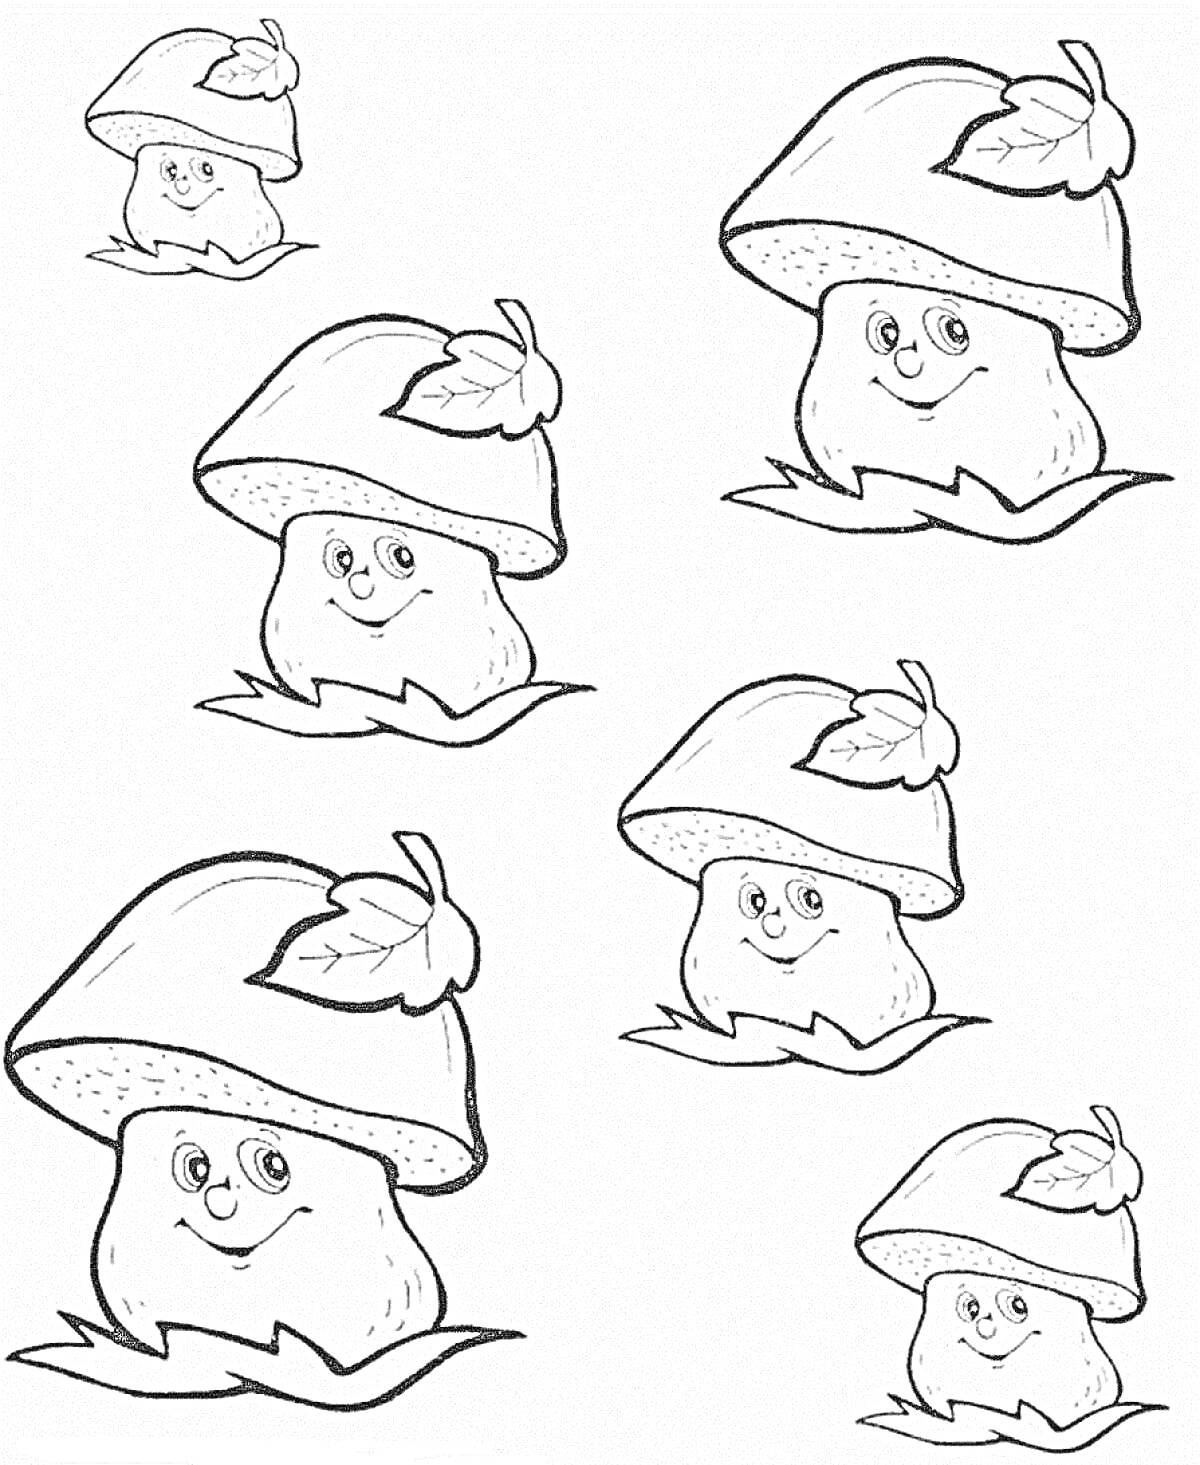 Раскраска Грибы: пять грибов с лицами и листьями на шляпках